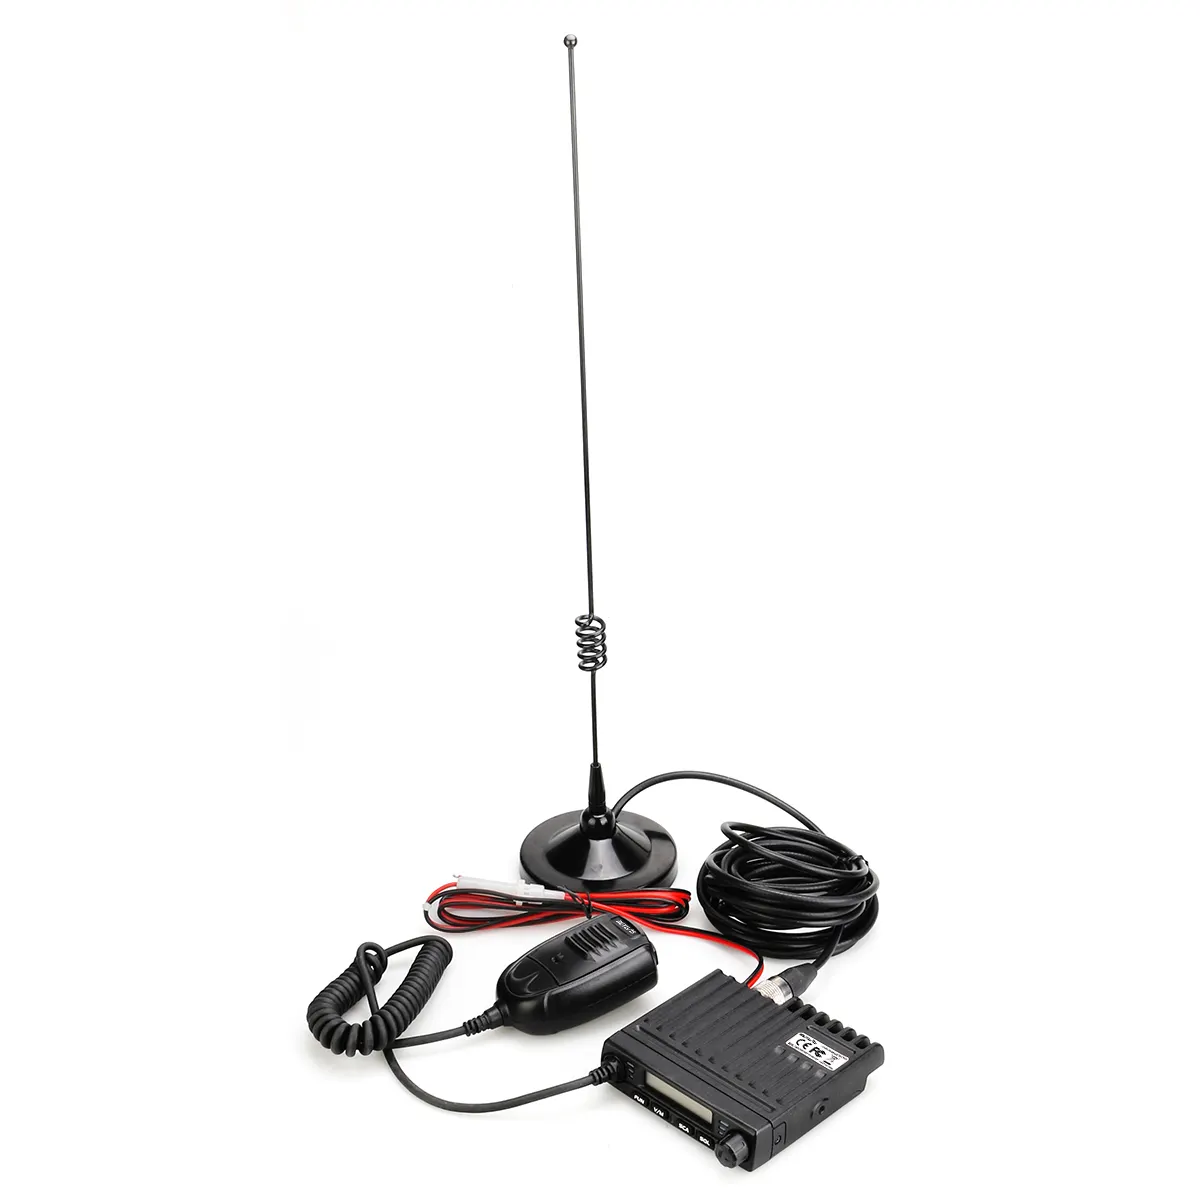 Transreceiver Radio Mouse Kendaraan Mini Murah, dengan Antena Stasiun Ham UHF/VHF 15W untuk Teknik Taksi/Off-Road SUV